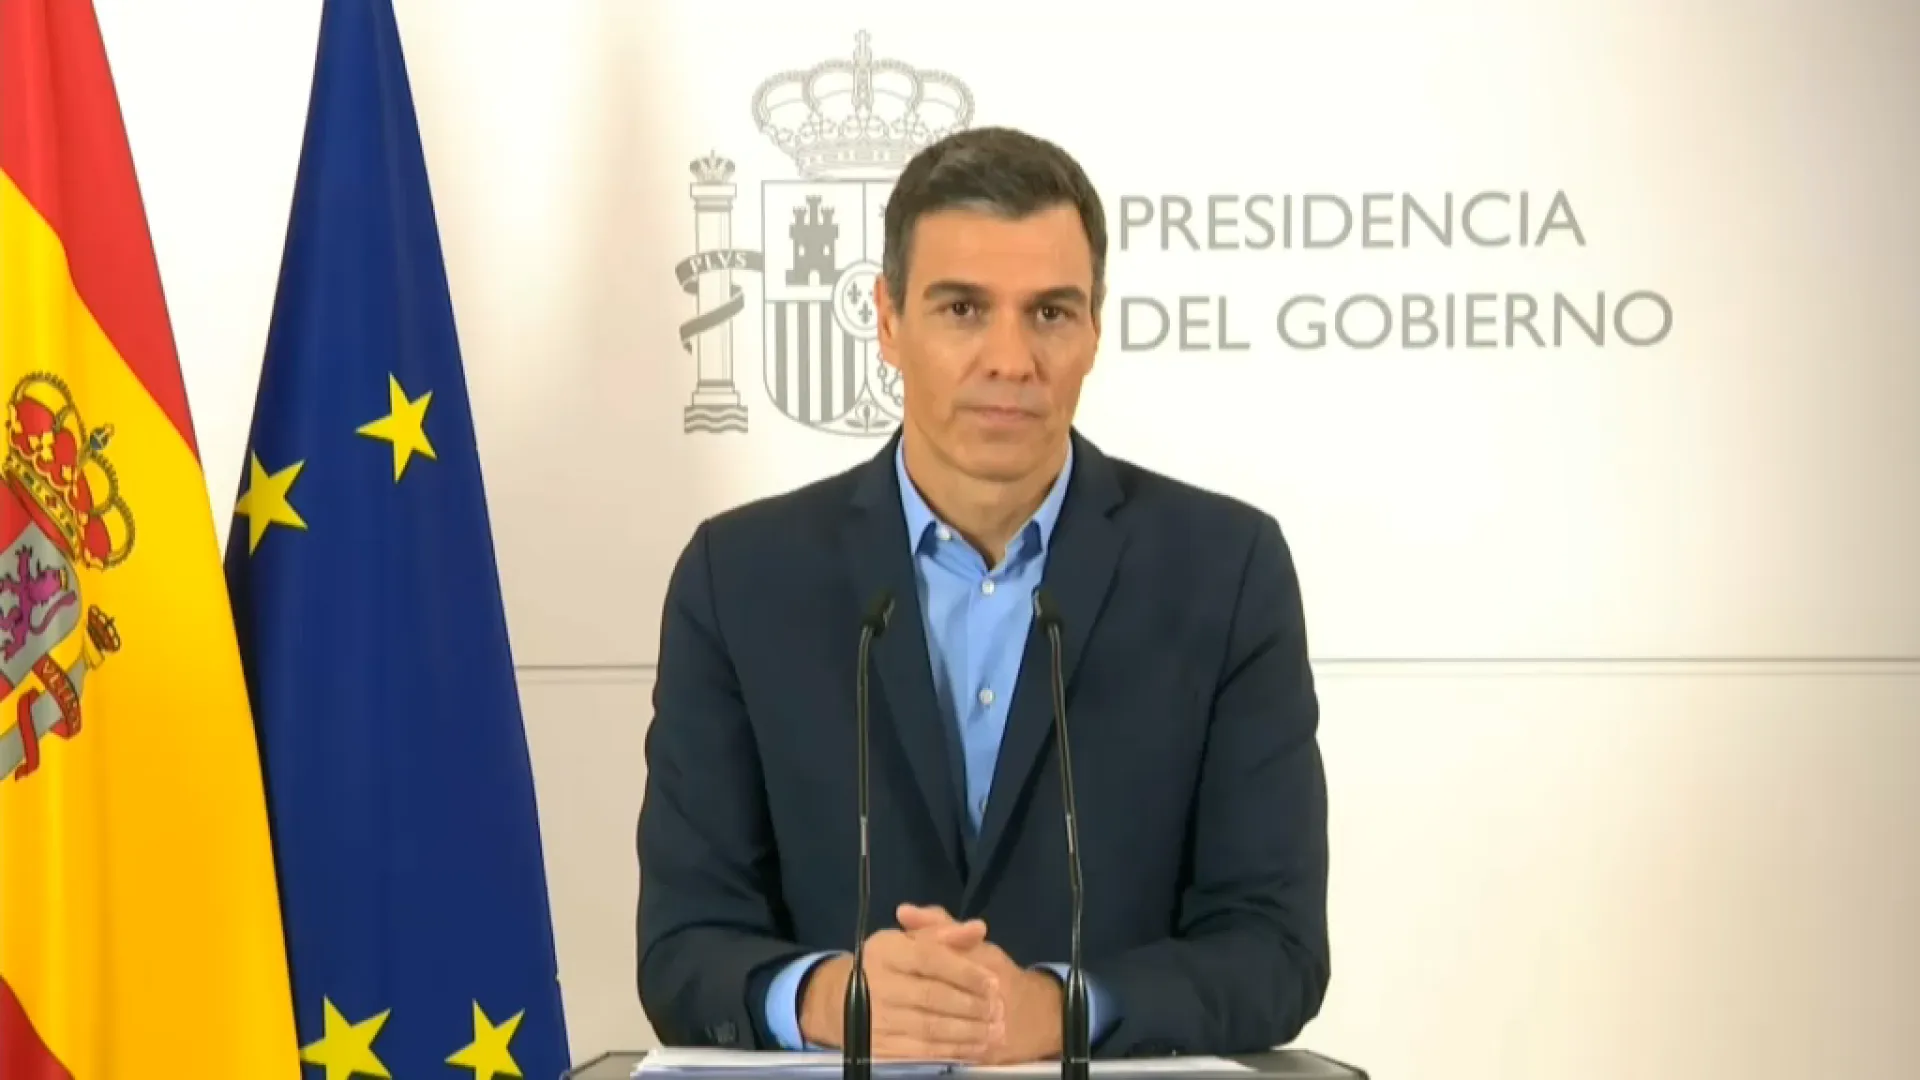 Pedro Sánchez: “Els impostos han de ser progressius i els que més tenen han d’aportar més a la caixa comuna”